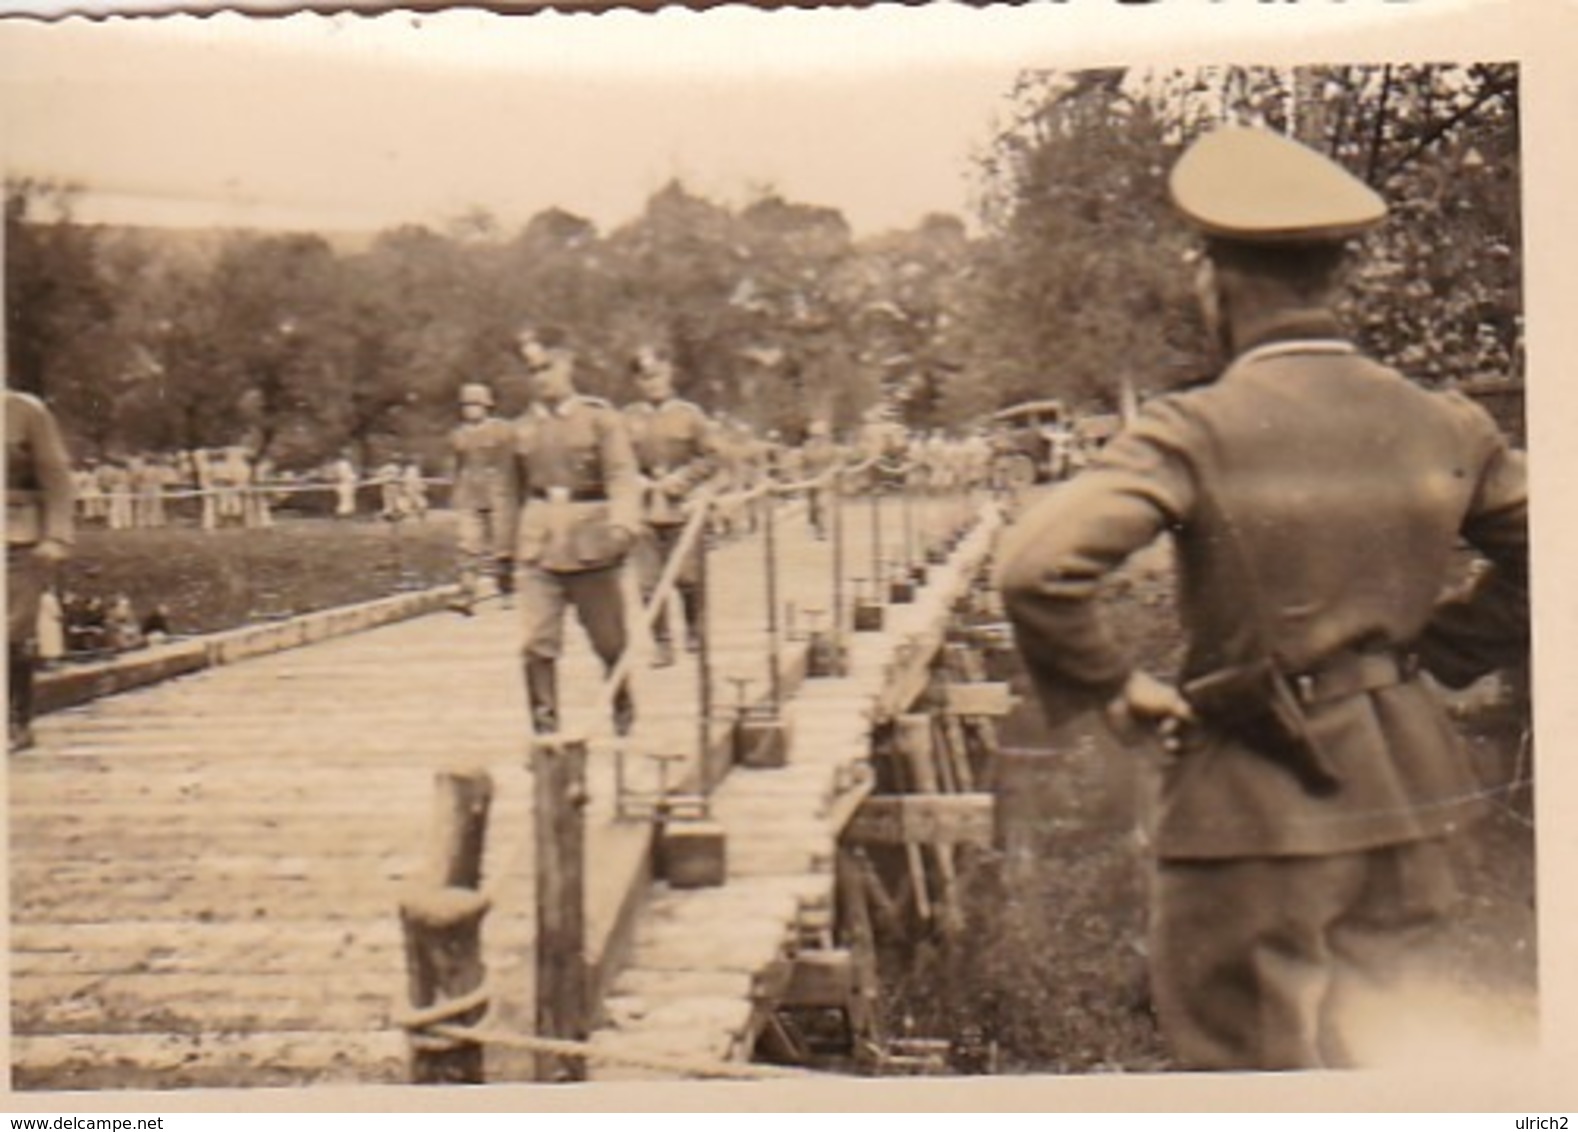 Foto Deutsche Soldaten Auf Holzbrücke - Pioniere IR46 - 2. WK - 8*5,5cm (43451) - Krieg, Militär